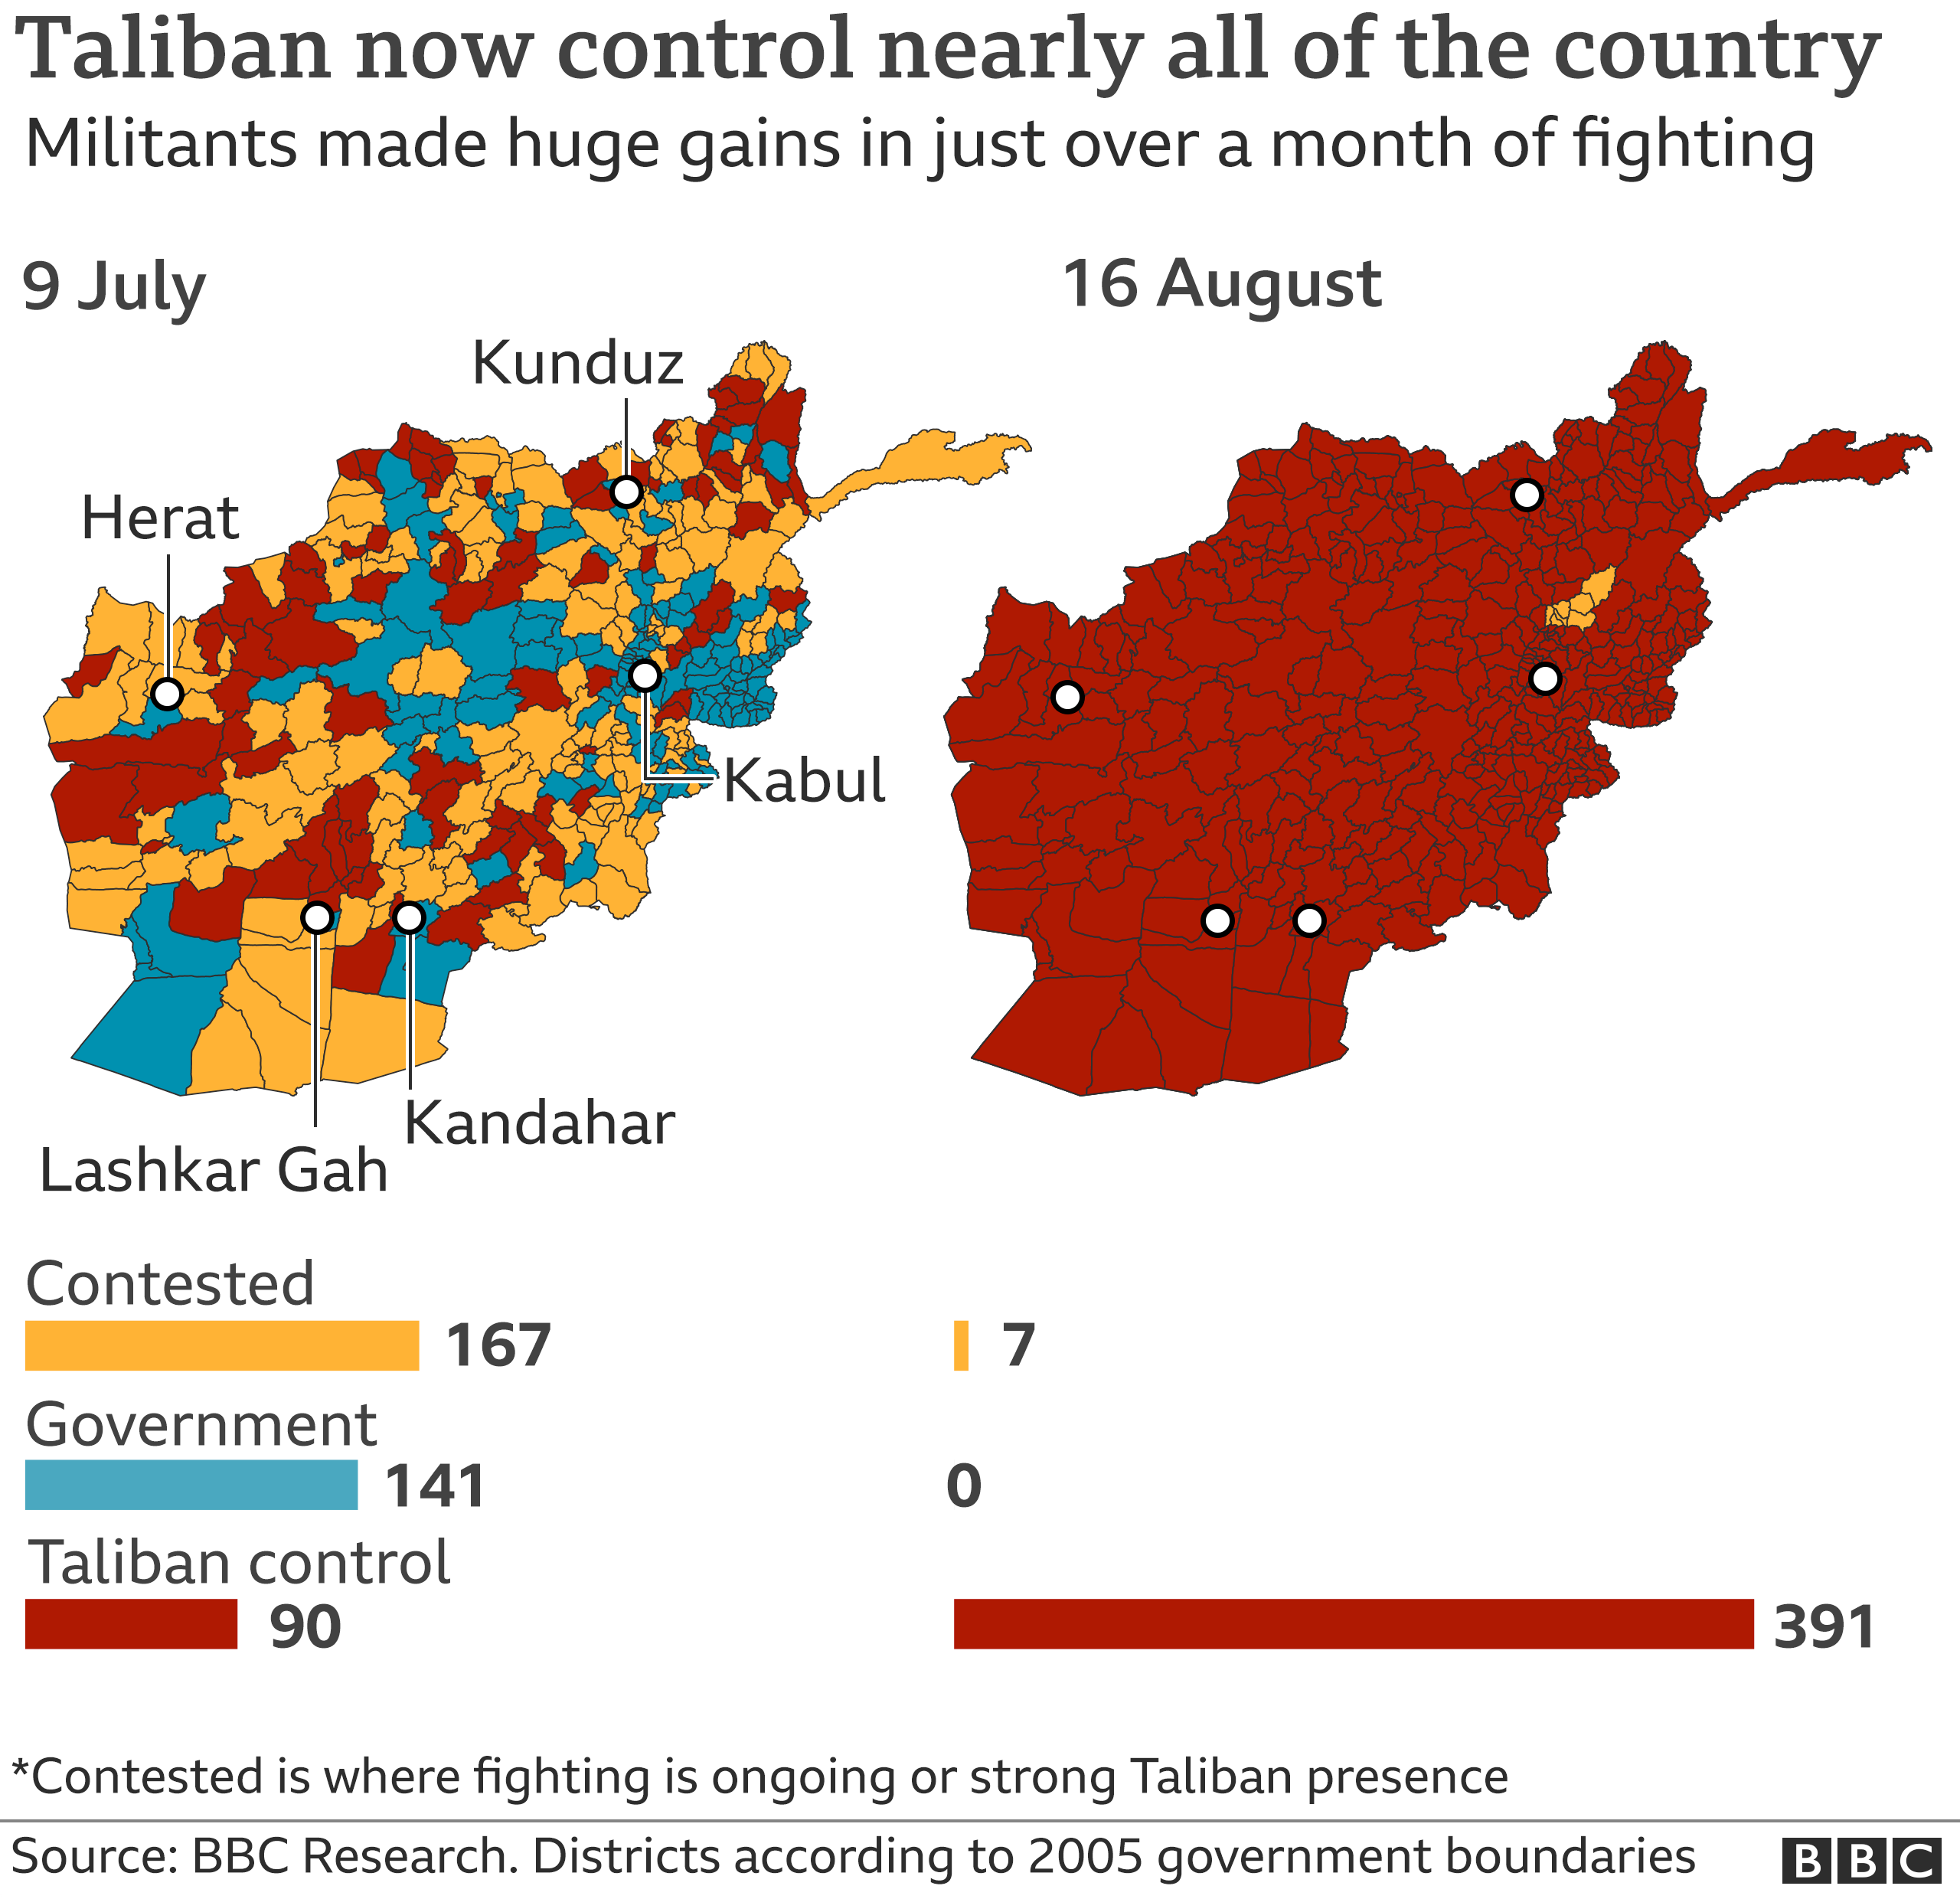 Χάρτης που δείχνει πόσες περιοχές ελέγχουν οι Ταλιμπάν τον περασμένο μήνα σε σύγκριση με τώρα